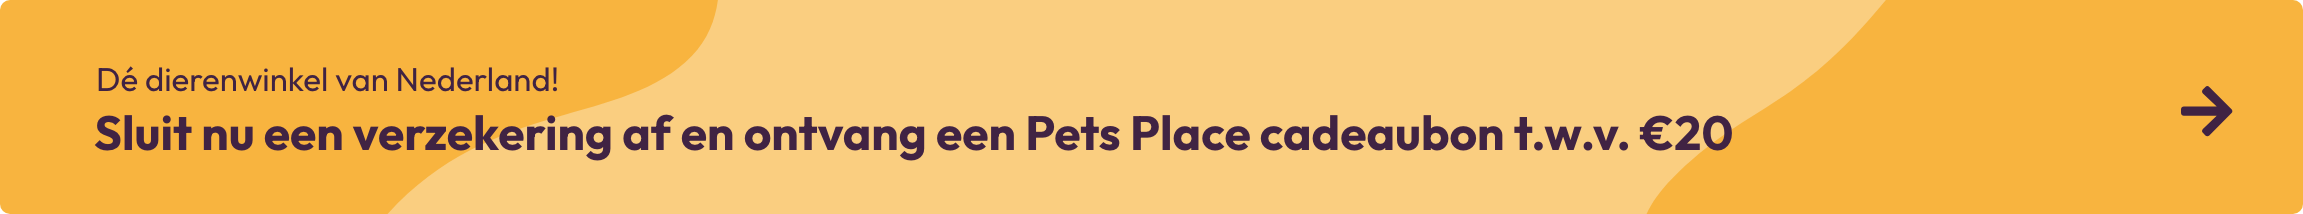 Sluit een verzekering af en ontvang een Pets Place cadeaubon twv 20 euro